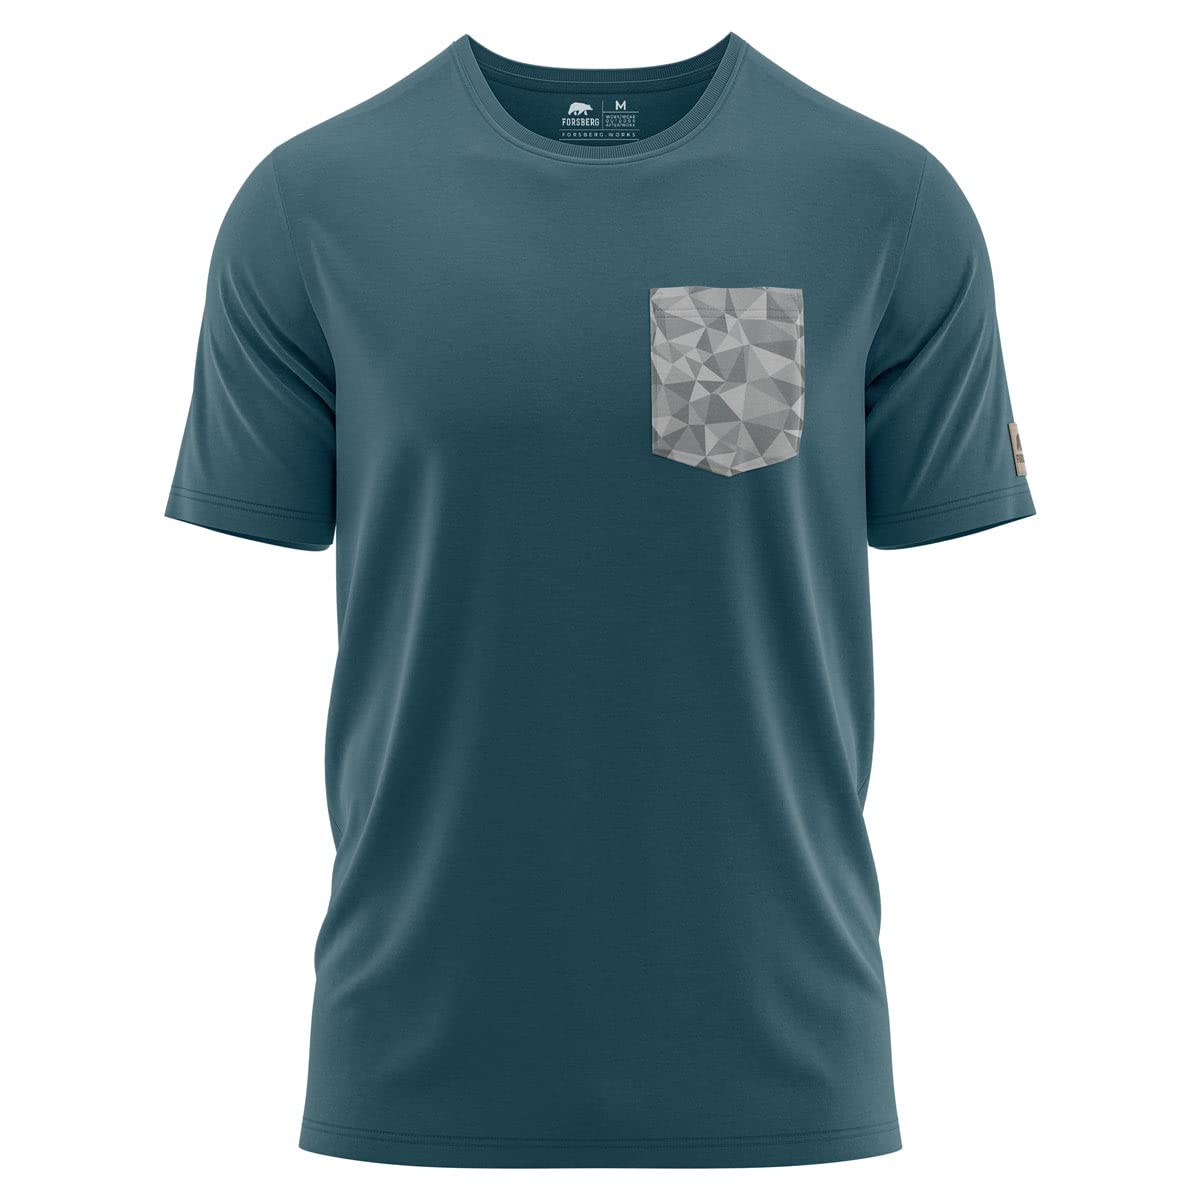 FORSBERG T-Shirt mit Brusttasche im polygonen Design Weiss, Petrol, Farbe:Nachtblau/grau, Größe:M